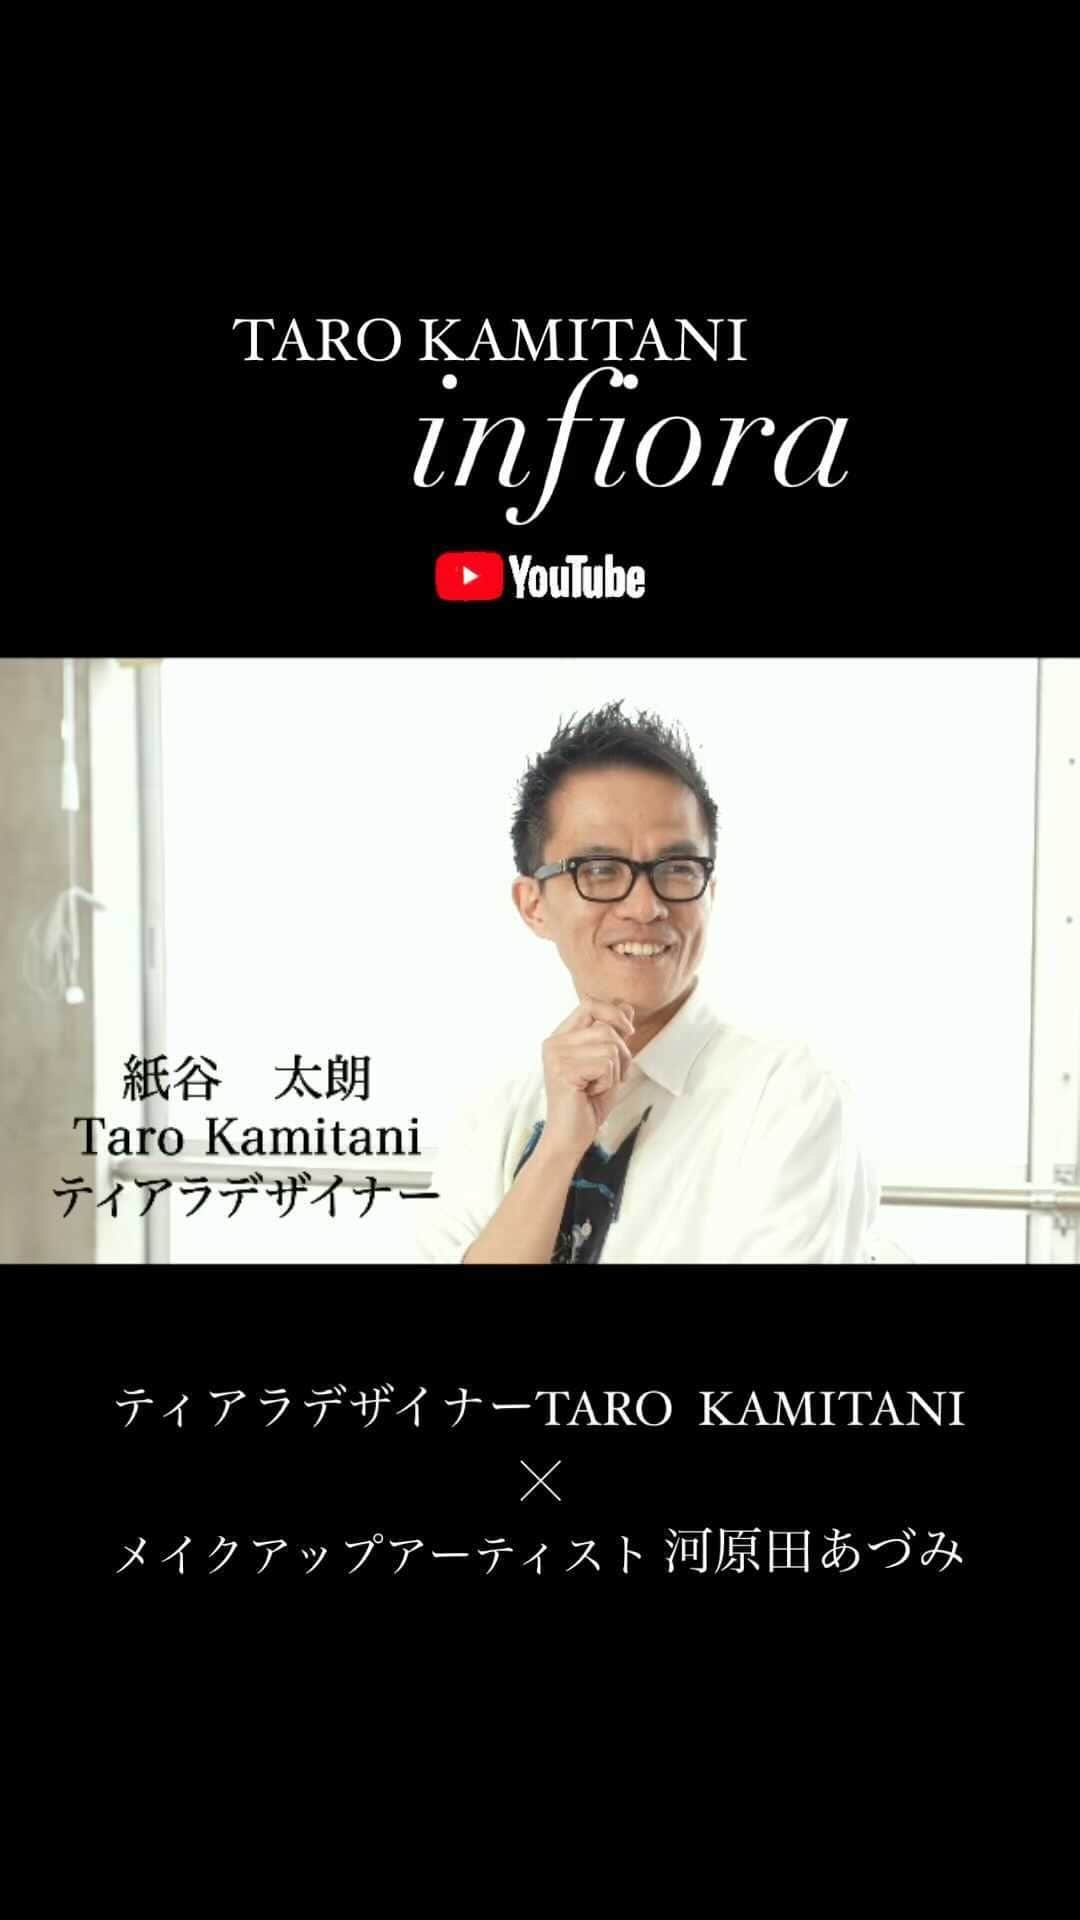 Taro Kamitani 世界初のティアラデザイナーのインスタグラム：「【youtubeシリーズ累計 50万回再生突破】 おかげ様で、 全国で大ヒットレンタル中の、TARO  KAMITANIティアラ 『インフィオーラ』。  メイクアップアーティスト 河原田あづみさんと、 ティアラデザインについて、 ヘアメイクについて、 そして『女優・木野山ゆう』について、 マニアックに語り合いました。  youtube『インフィオーラ』で、 検索！ プロフィールからも、リンク中！  ---  TARO KAMITANI最新作 『インフィオーラ』 自然モチーフの洗練＆繊細な美しさ。 最高級品質のアコヤ真珠＋ ダイヤモンドに匹敵する輝き、 新素材「infiora」を贅沢に使用。  テーマは「心、咲かせる、美しさ」。 自然美を使って、曲線のみで デザイン構成。 極シンプルながら、 世界最高級の素材を活かした、 軽やかで繊細な美しさを 目指しました。 ティアラを着けた人の「らしさ」、 内側からの輝きを、 花のように咲かせます。  王道感あるデザインフォルムで、 クラシカルなプリンセスヘア、 ナチュラルなダウンスタイル どちらにも合わせやすく、 品位と存在感を放ちます。  ティアラ、 イヤリング、ネックレス、 そして、ご新郎さまのメンズピン。  ドレスとのコーデ、全体バランスも、とことん追求。 クラフトマンシップの技が、 細部にまで光ります。  ドレスメーカー、 クラウディアグループの 店舗限定コレクションです。  雑誌「STORY」「VERY」「CLASSY.」「JJ」「朝日新聞」等でも紹介されました。 ______________  @wedding_hiltonnarita  @biancasposa_mie  @kobe_portopiahotel_wedding  @lf_the_palm_garden_orient  @arcenciel.luxeosaka  @eines_oceanportside  @hotelnikkonarita_wedding  @wedding_hiltonnarita  @grandnikkotokyodaiba_wedding  @makecworthdressing @arcenciel.luxenagoya  @nikko_narita_costumesalon  @nidomwedding  @ginzacouturenaoco_dress  @arcenciel.yokohama  @urayasubrightonhotel_bridal  @meriken_orientalhotel_wedding  @ailesfortuna @rihgaroyalhotel_wedding @arcenciel.kanazawa」